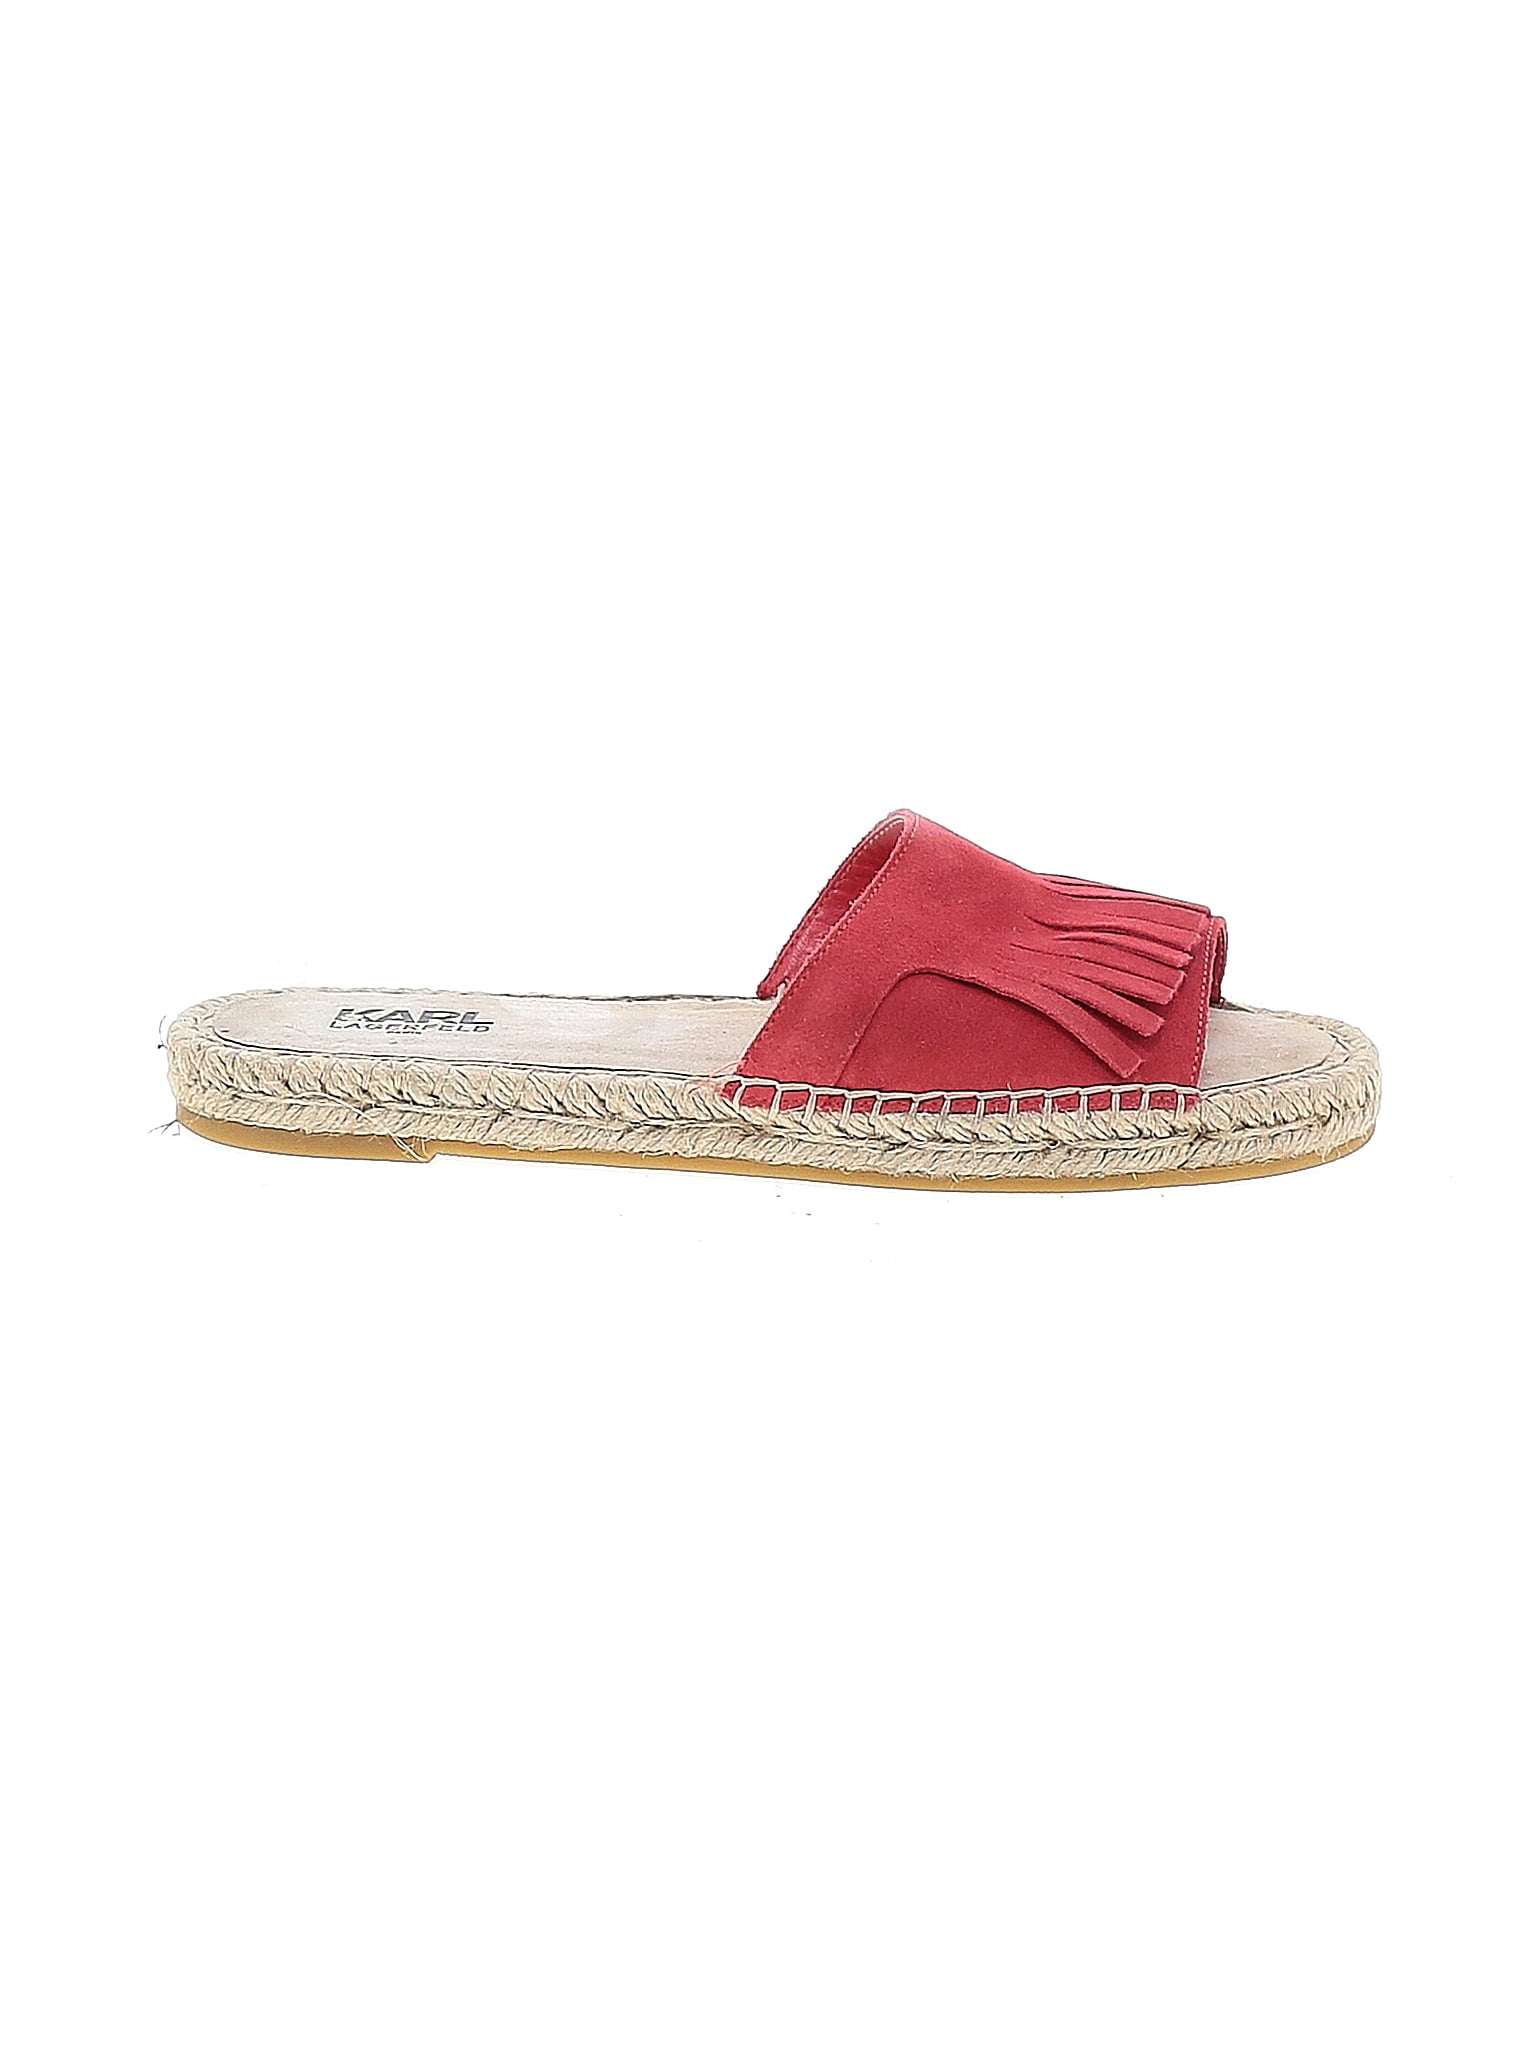 Karl Lagerfeld Paris Red Sandals Size 9 - 71% off | ThredUp